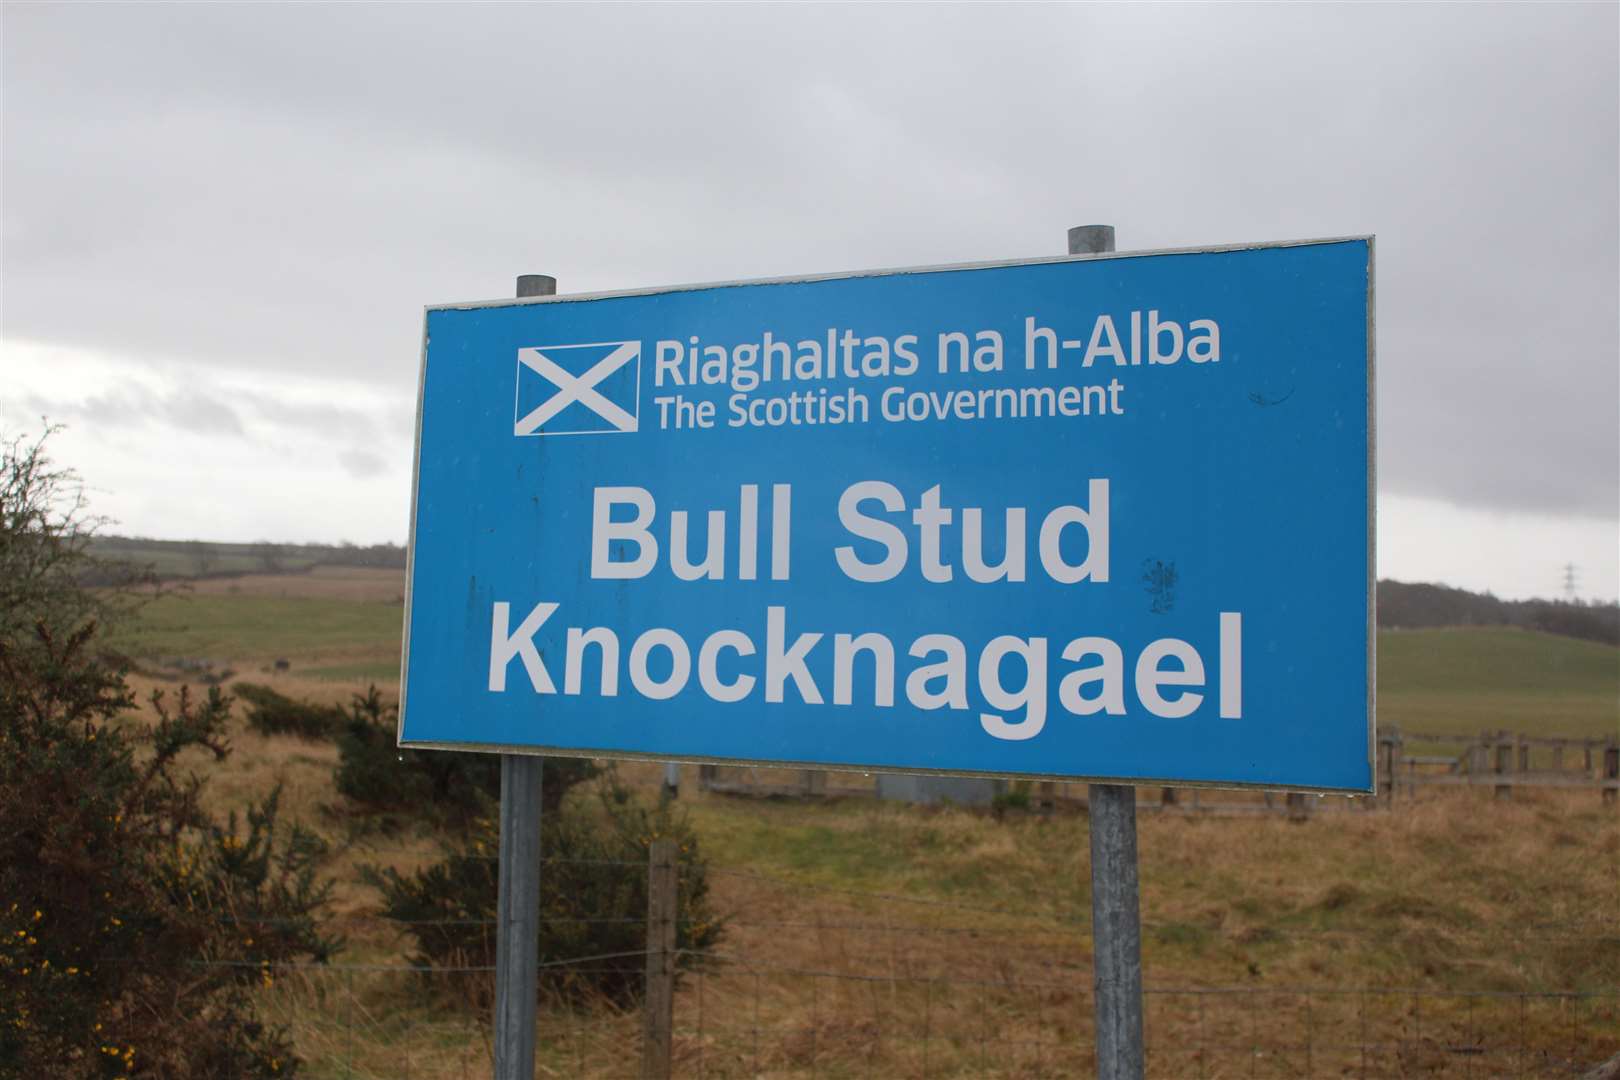 Knocknagael Bull Stud Farm in Inverness.